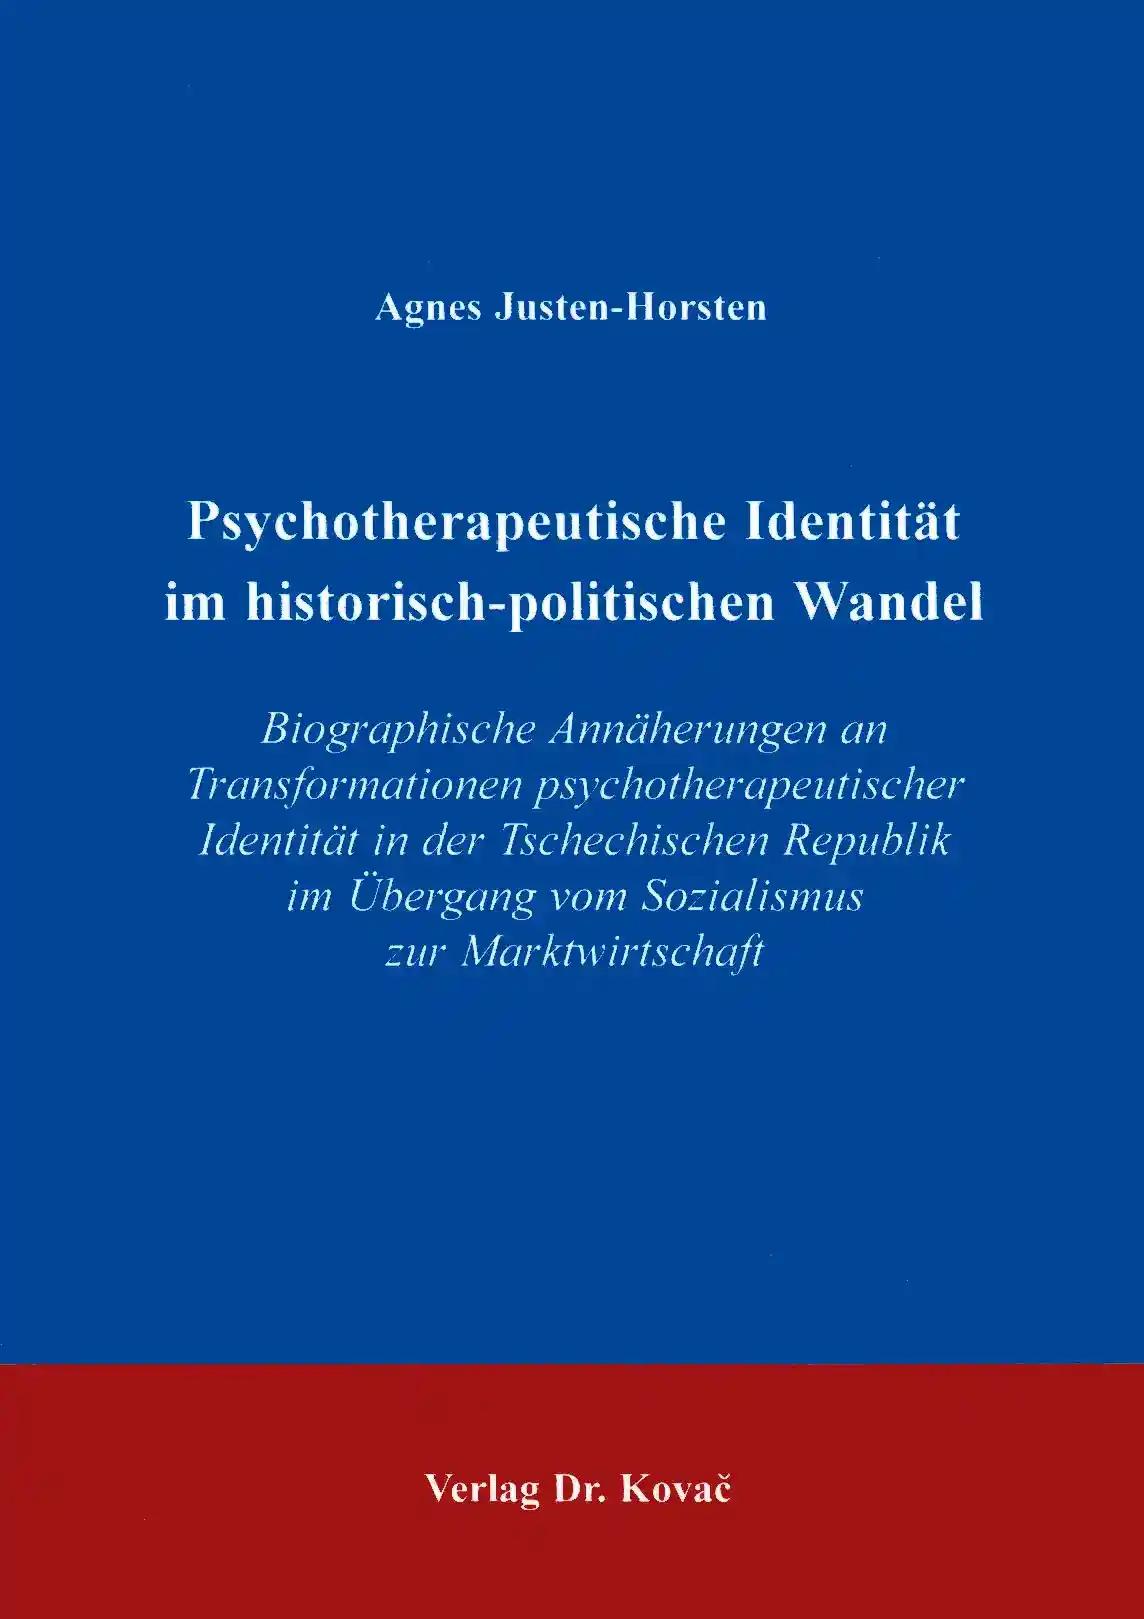 Dissertation: Psychotherapeutische Identität im historisch-politischen Wandel